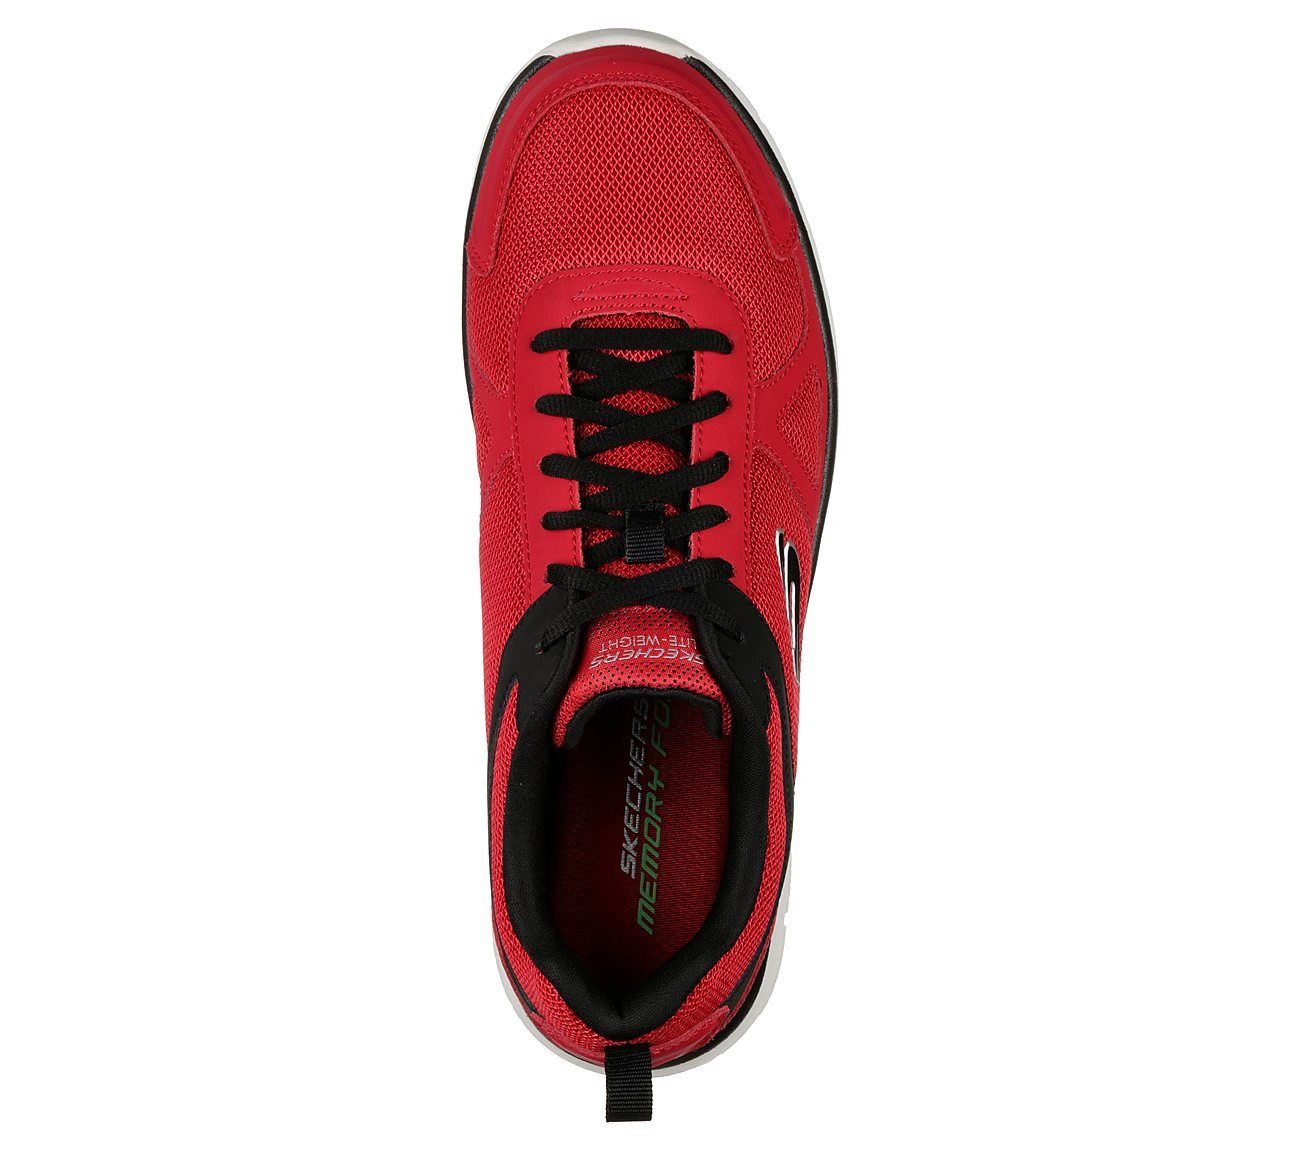 Red-Black / Skechers Scloric Rot-Schwarz Sneaker RDBK -